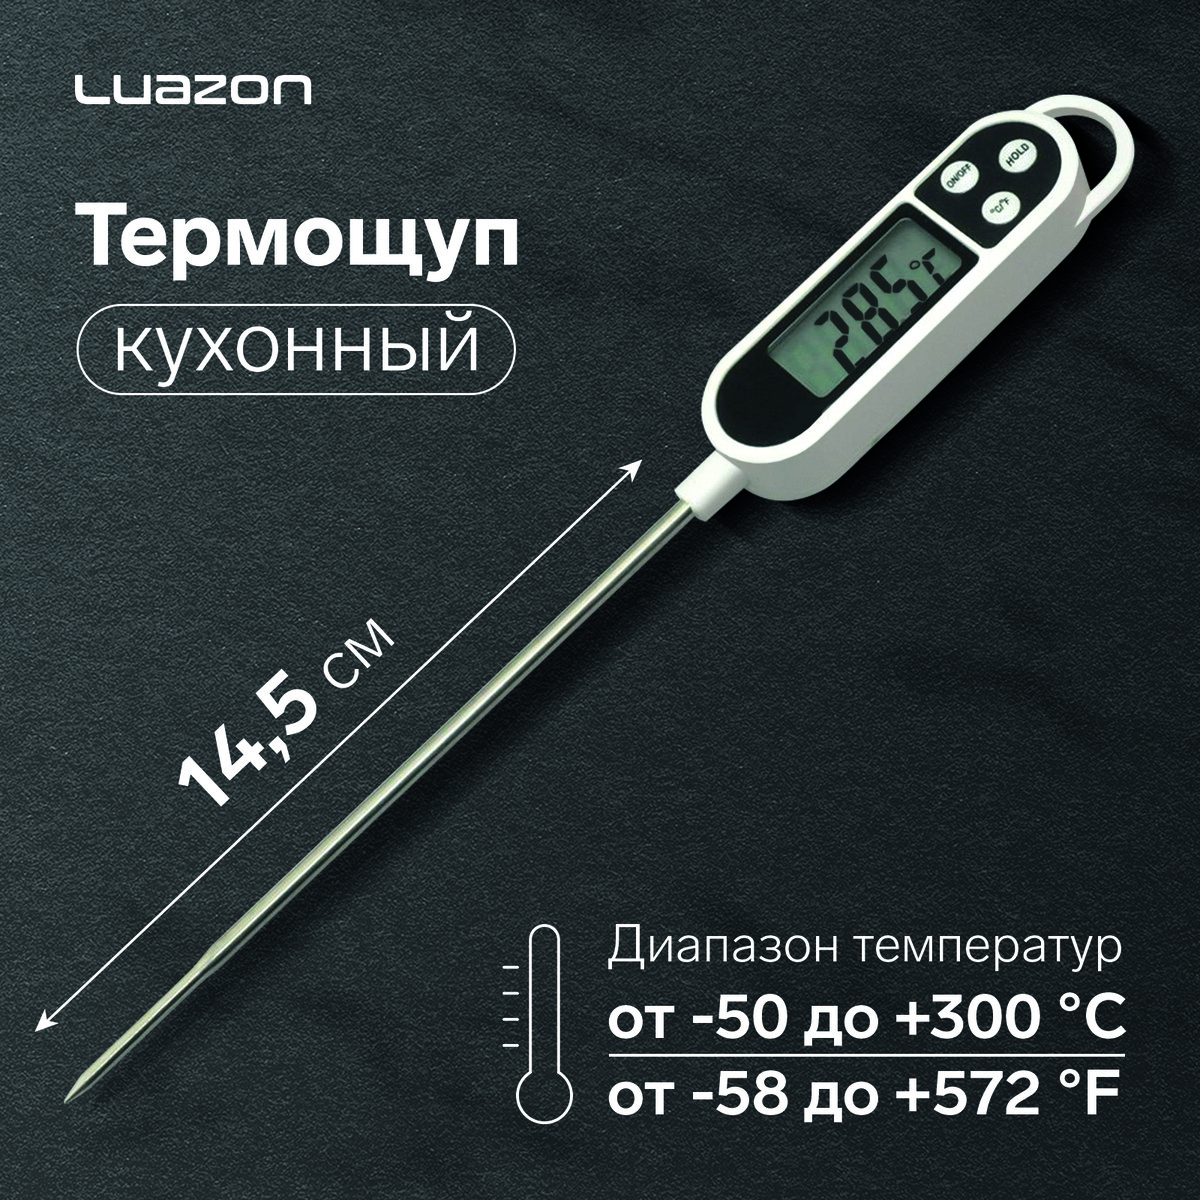 Термощуп кухонный luazon ltr-01, максимальная температура 300 °c, от lr44, белый термощуп кухонный luazon ltr 01 максимальная температура 300 °c от lr44 белый